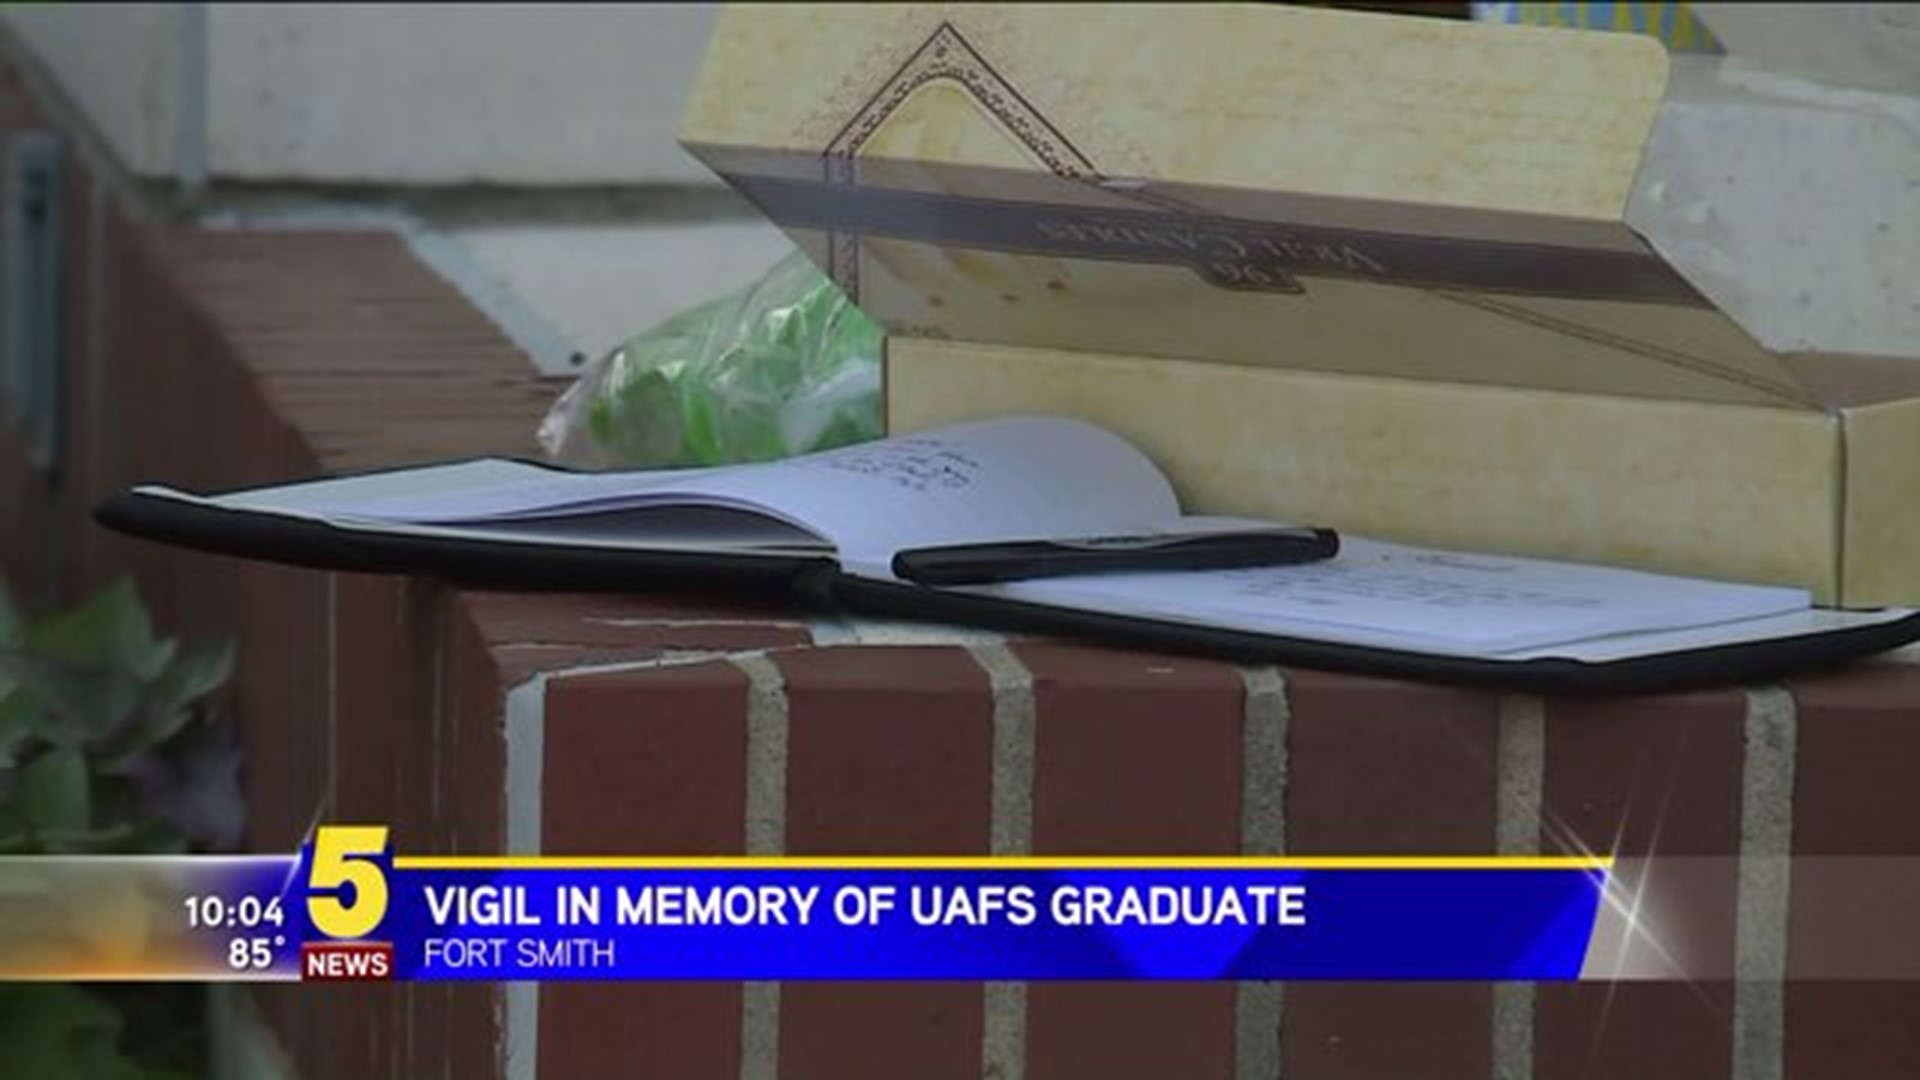 Vigil In Memory Of UAFS Graduate